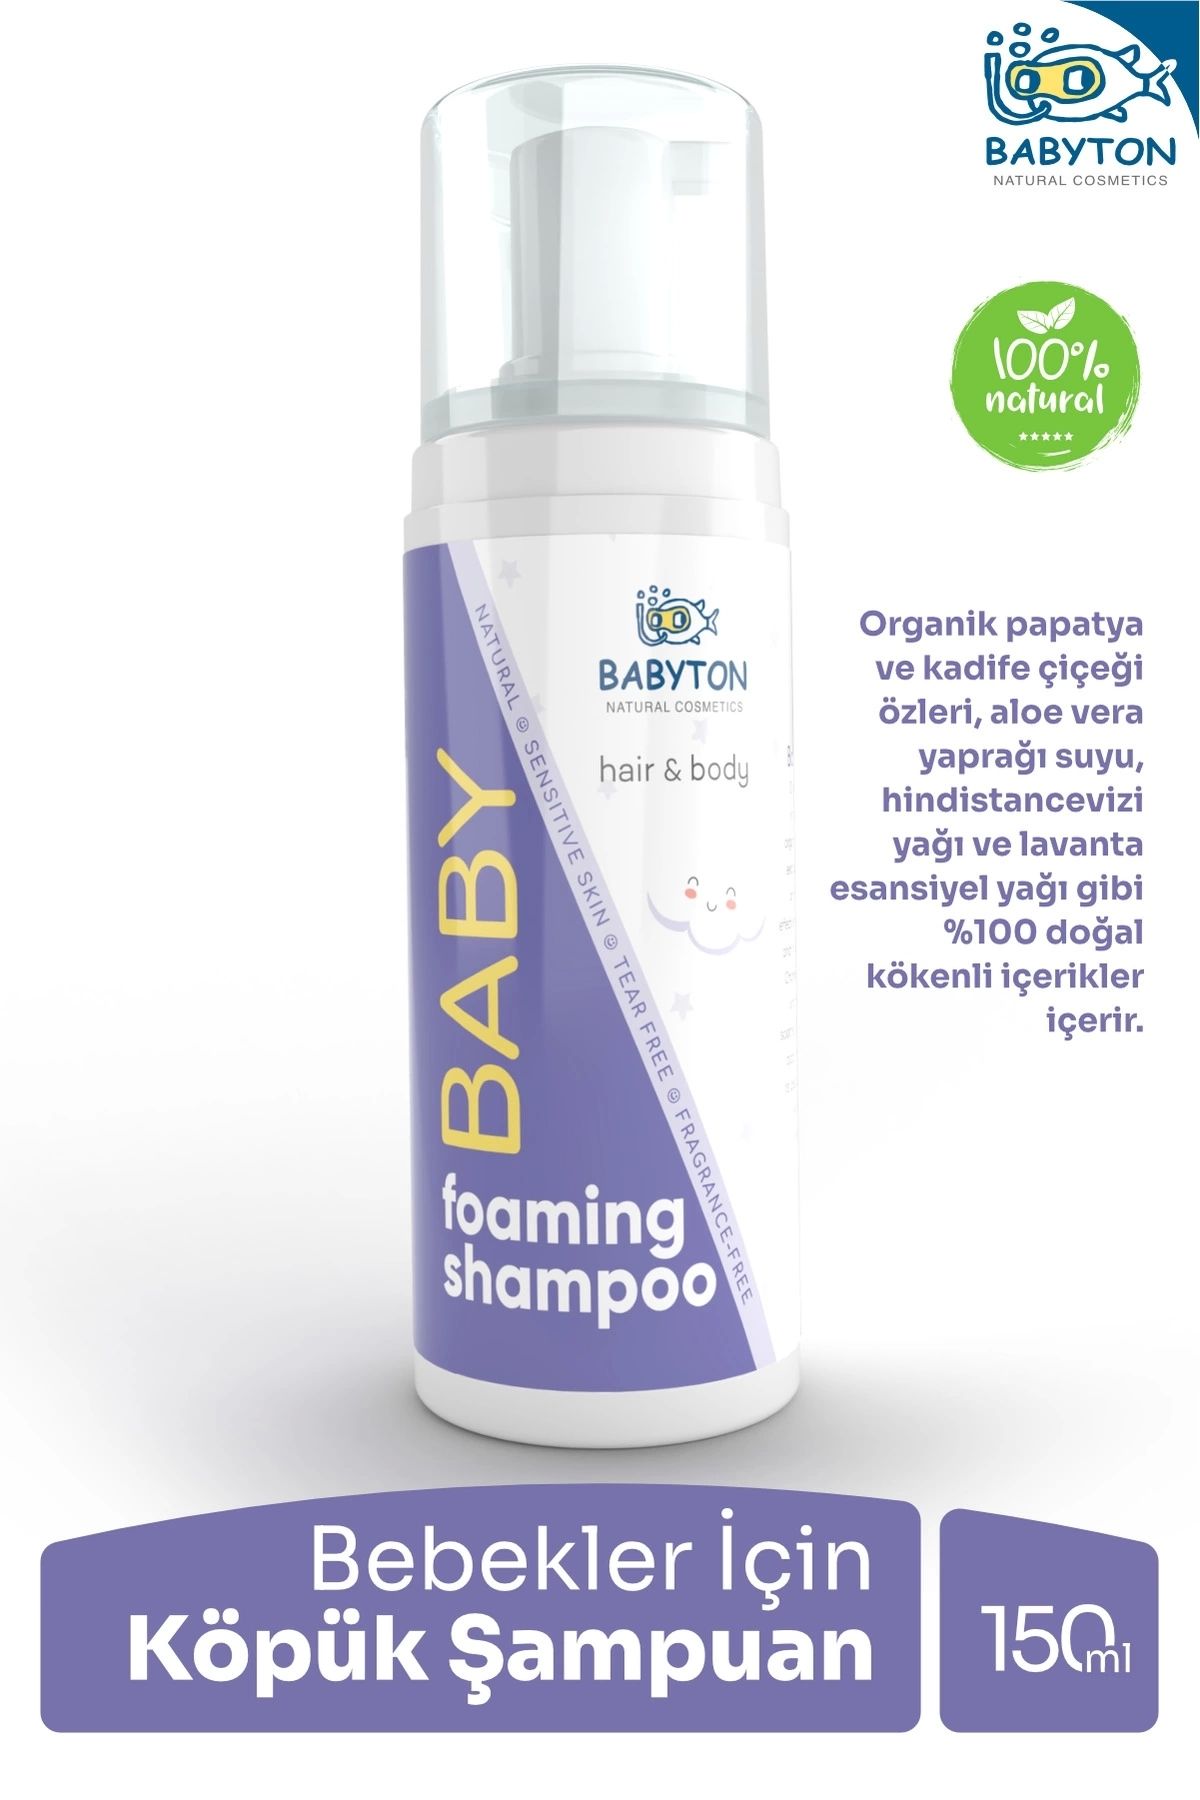 BABYTON Yenidoğan Konak Önleyici Doğal ve Organik Köpük Şampuan 150 ml